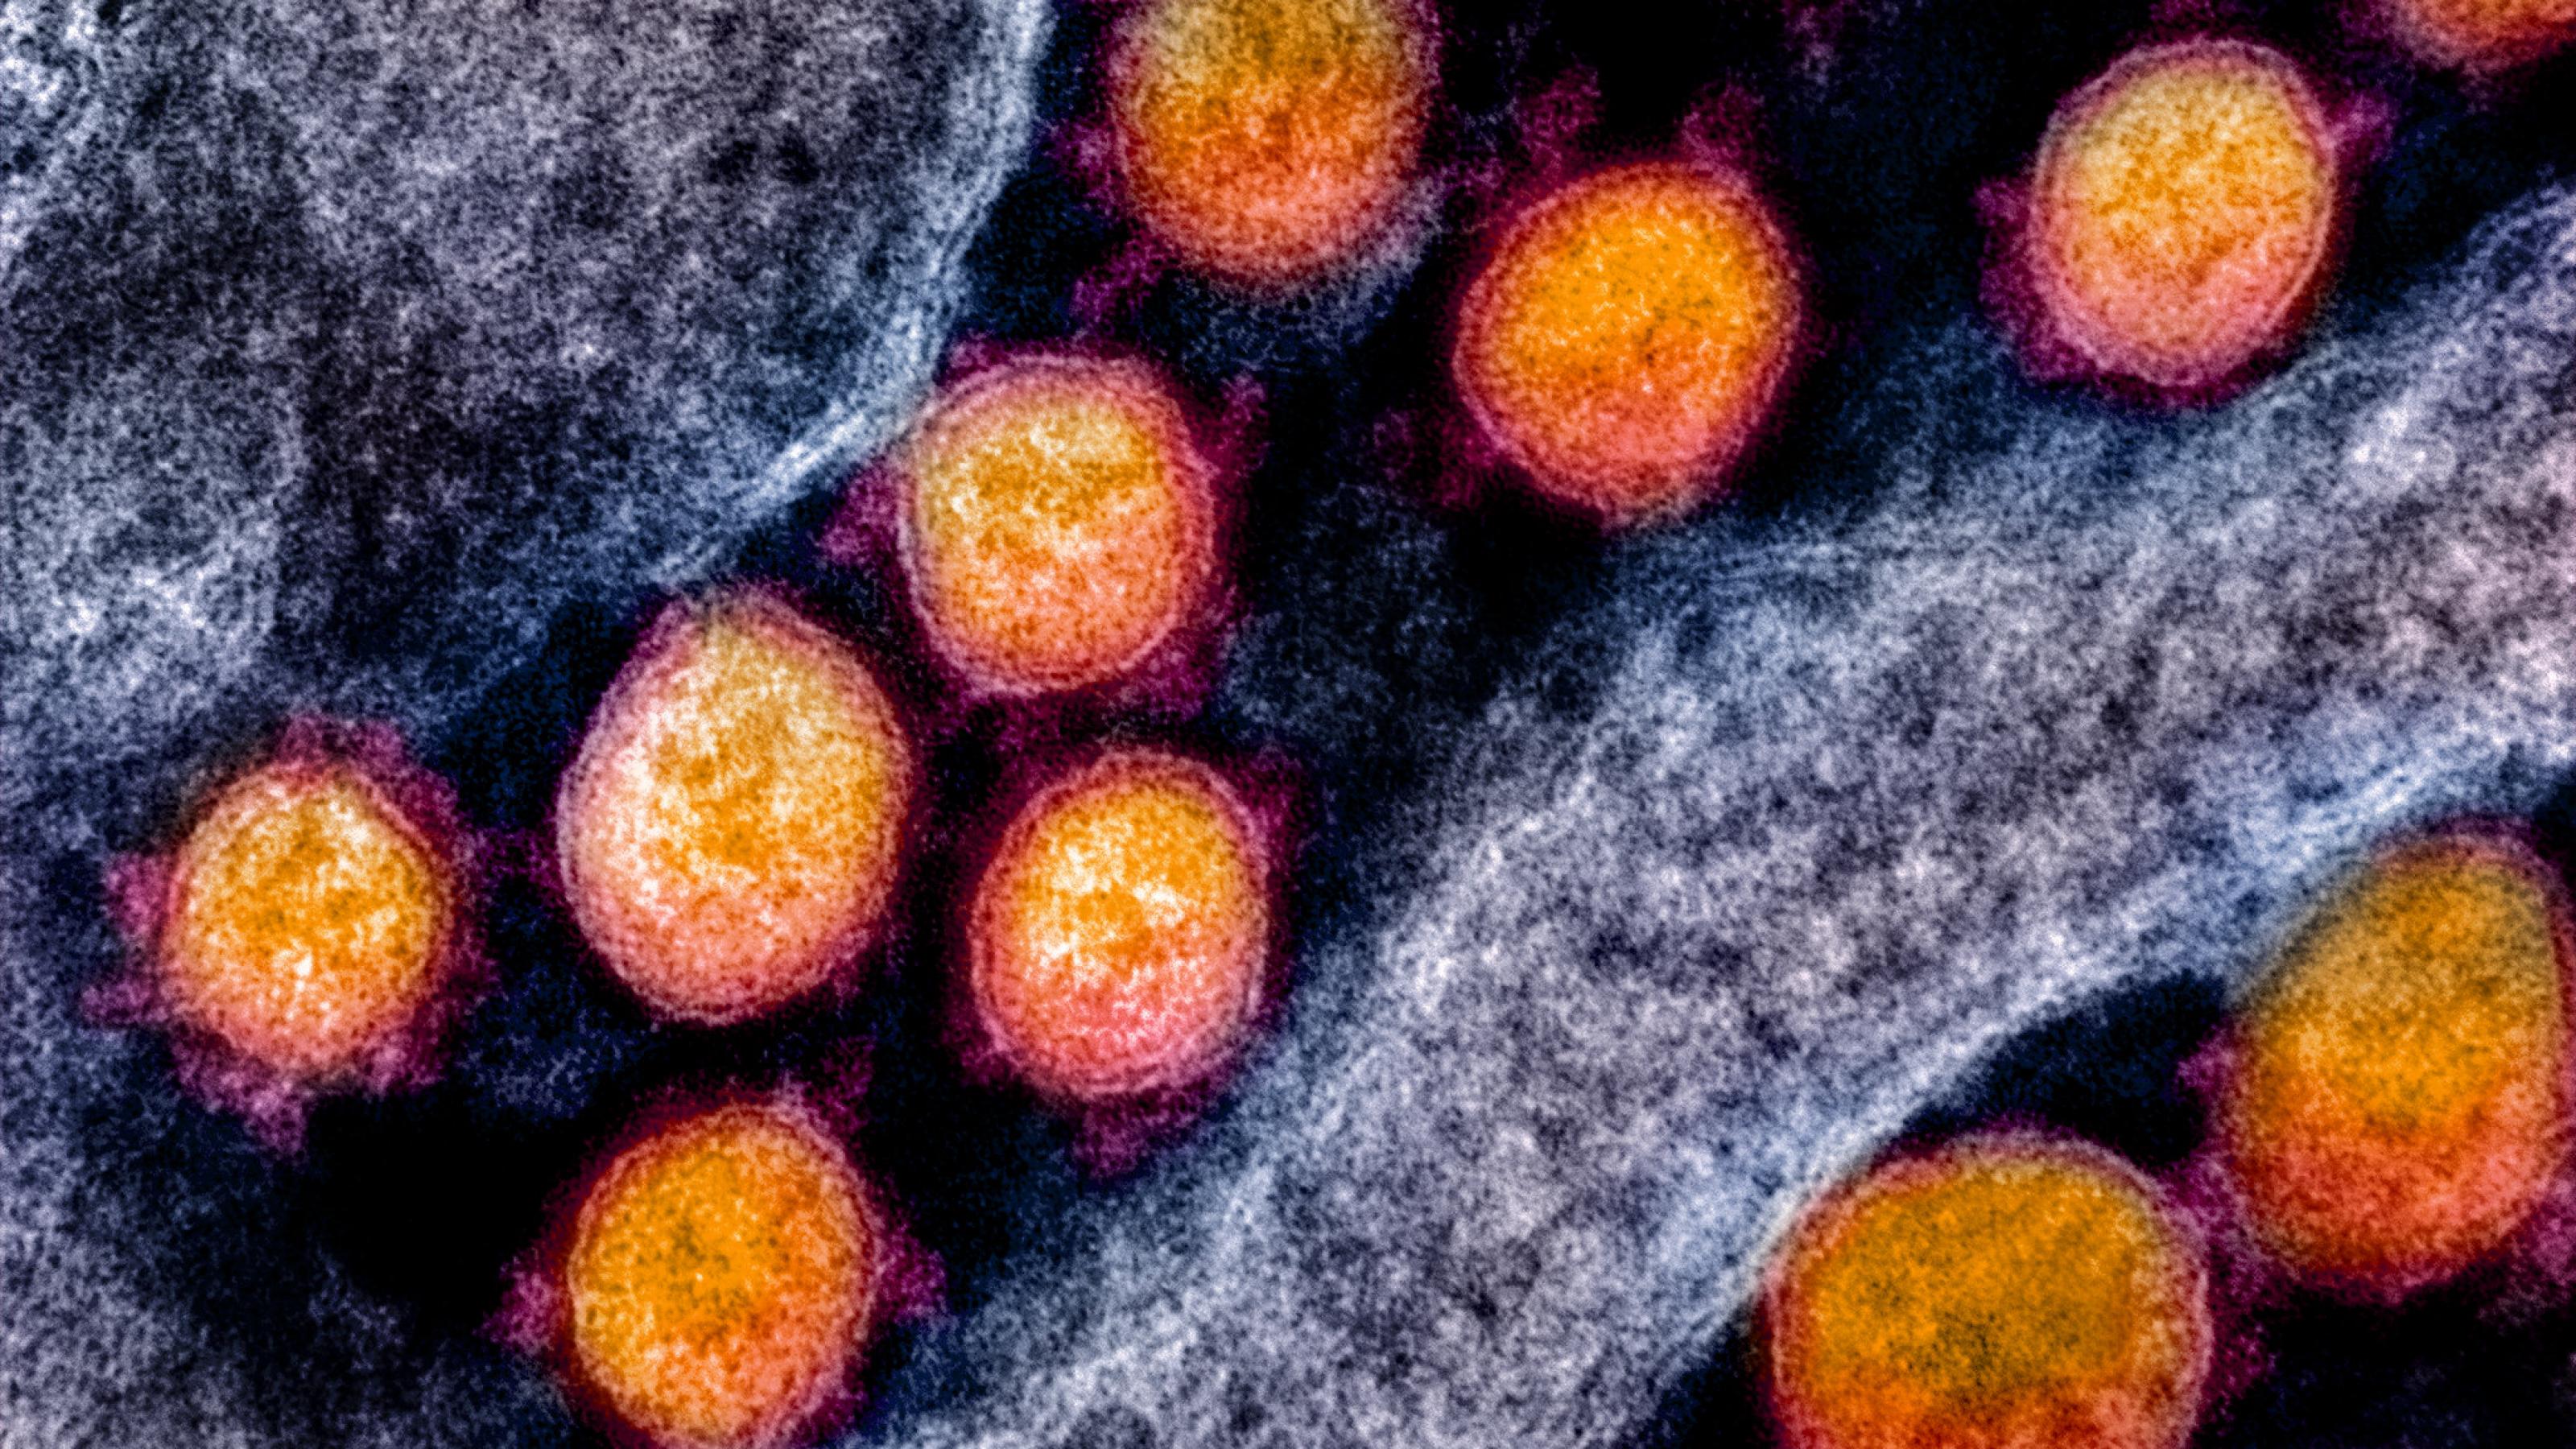 Das Bild zeigt runde Kugeln in einer biologischen Struktur. Die Kugeln sind Aufnahmen von Coronaviren, die Struktur das Gewebe des Körpers.